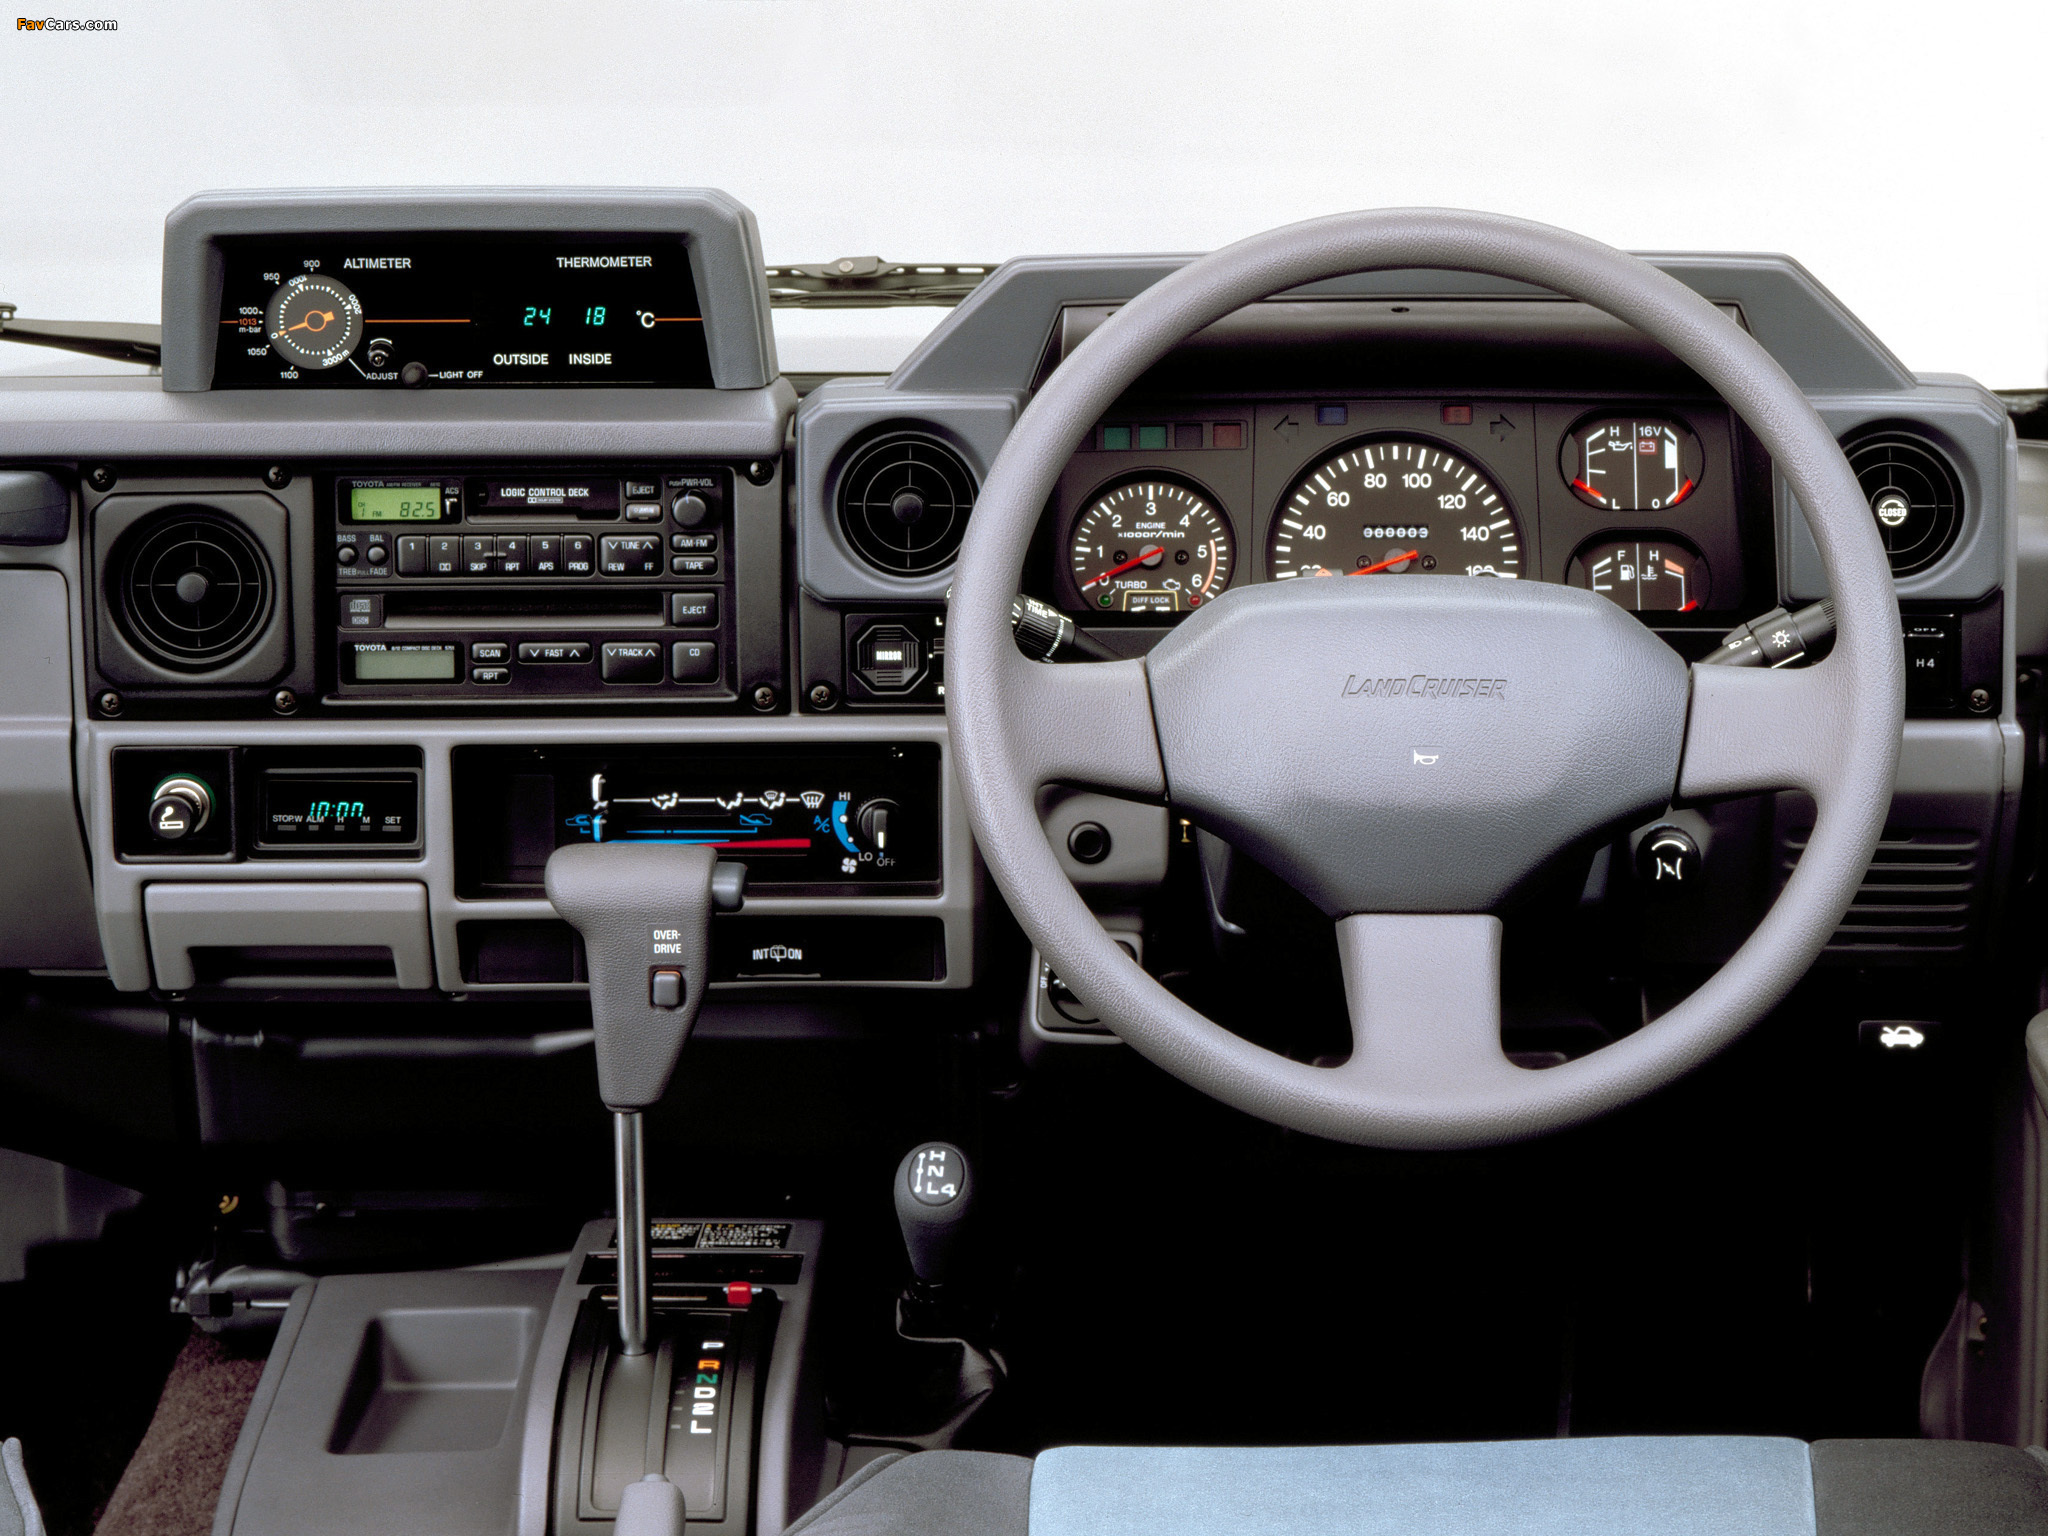 Toyota Land Cruiser Prado (J78) 1990–96 images (2048 x 1536)